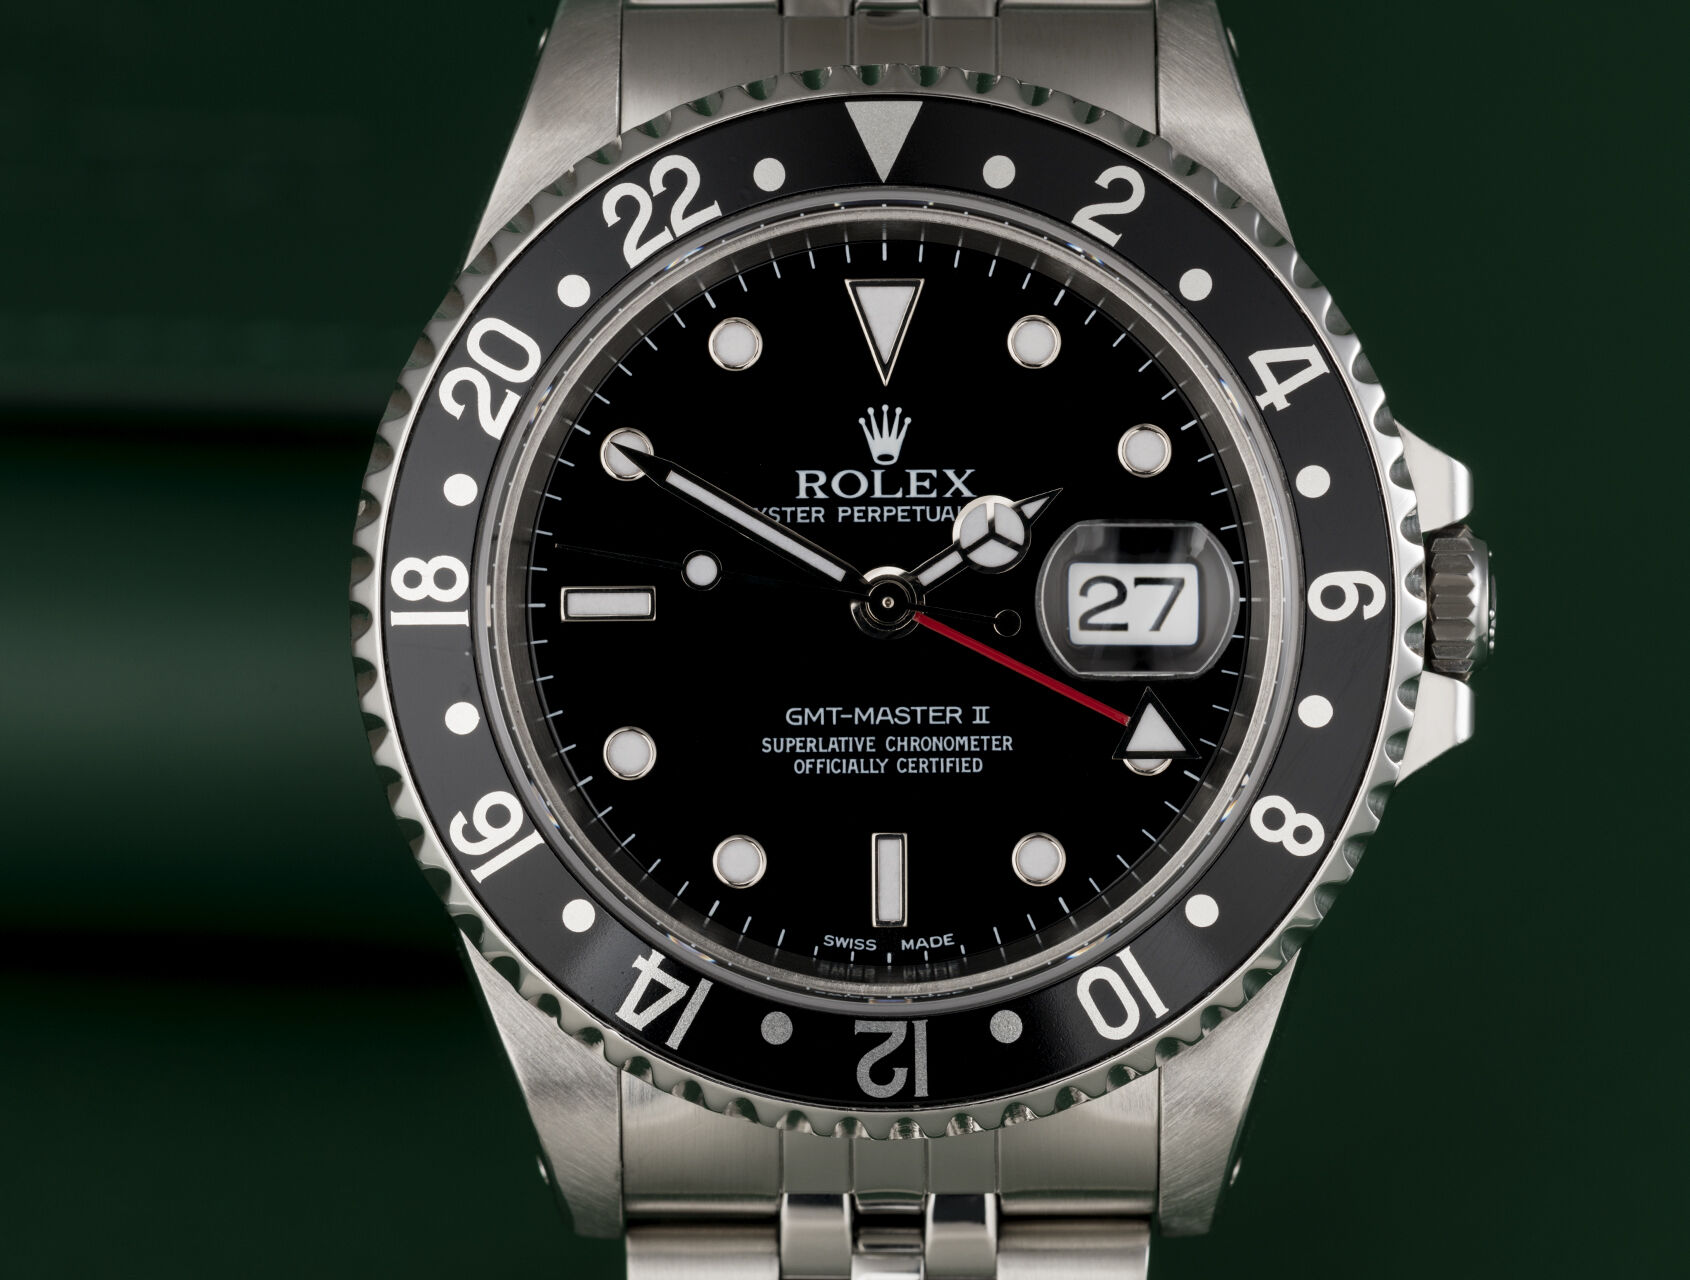 ref 16710 | 16710 - Rolex Warranty to 2027 | Rolex GMT-Master II